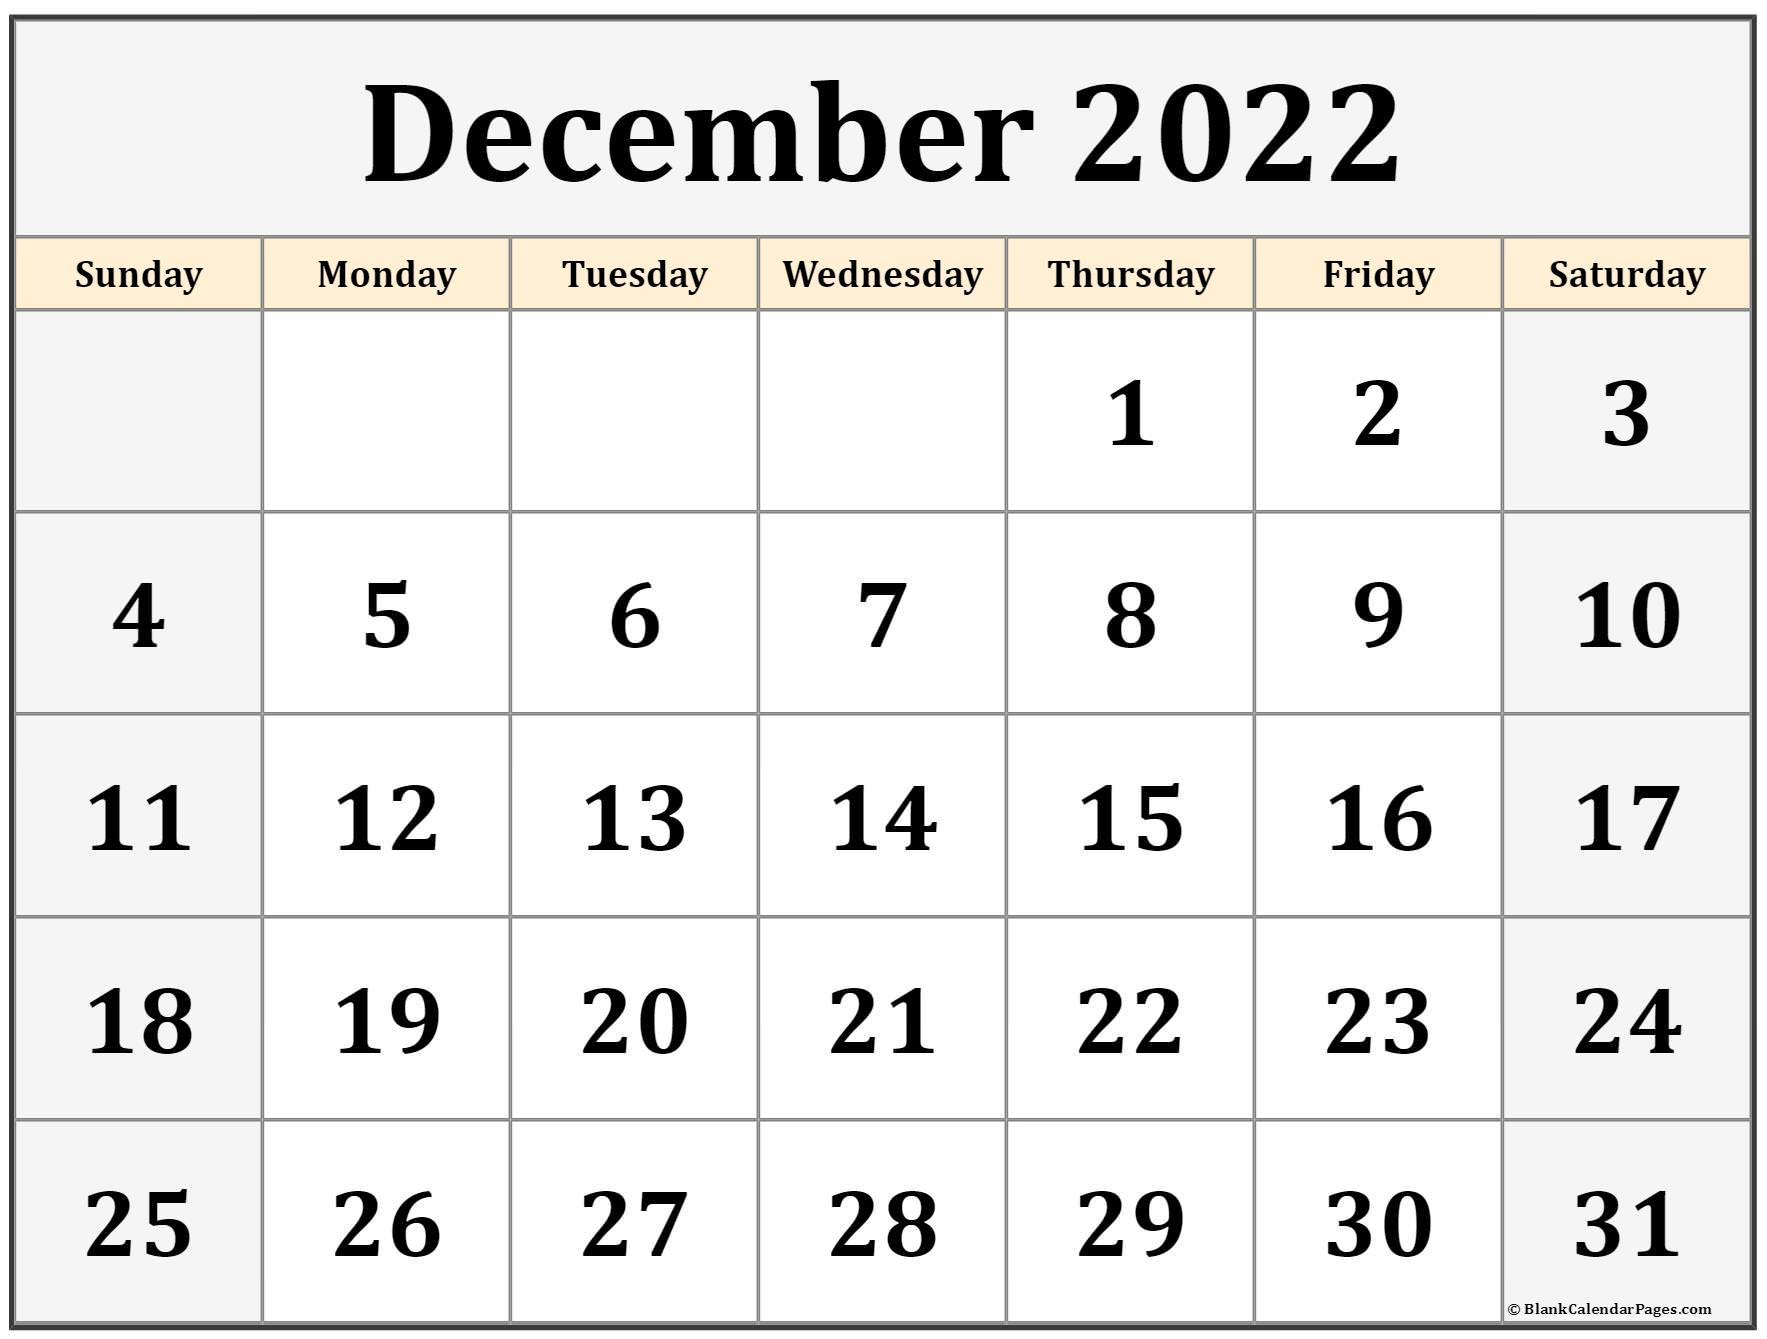 Get February 2022 Calendar With Holidays Canada